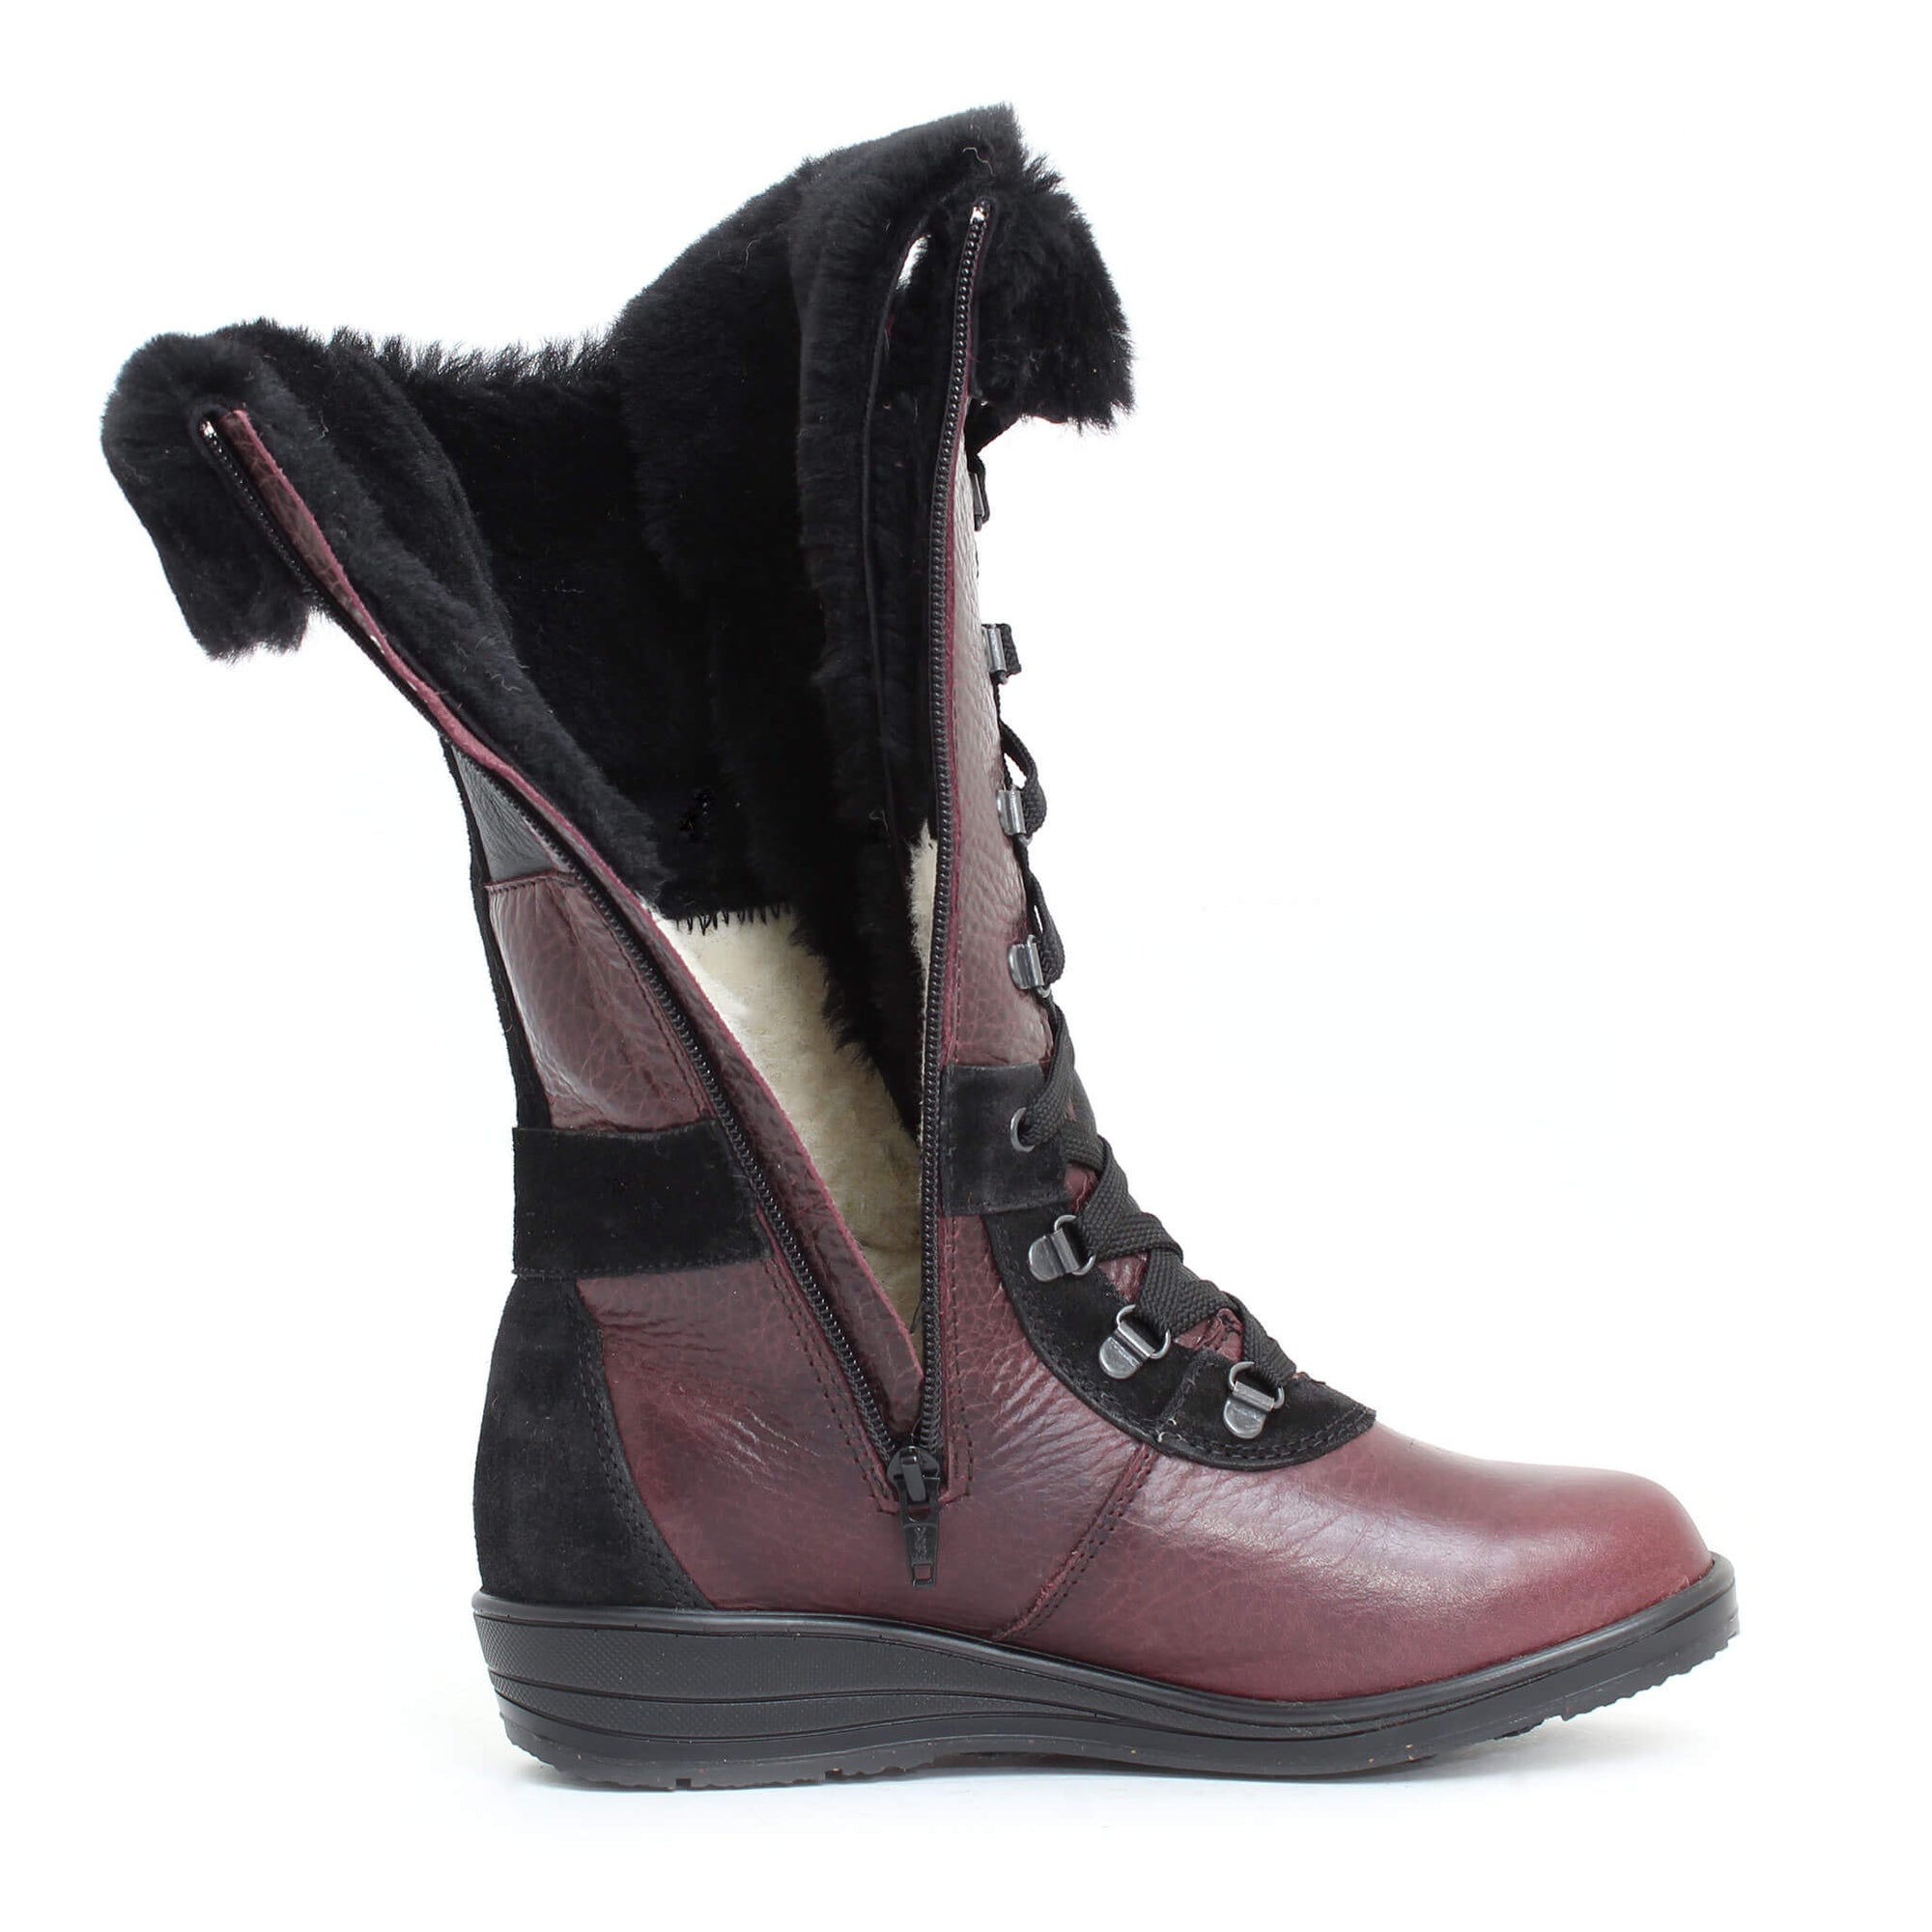 Maggie winter boot for women - Black-Khaki